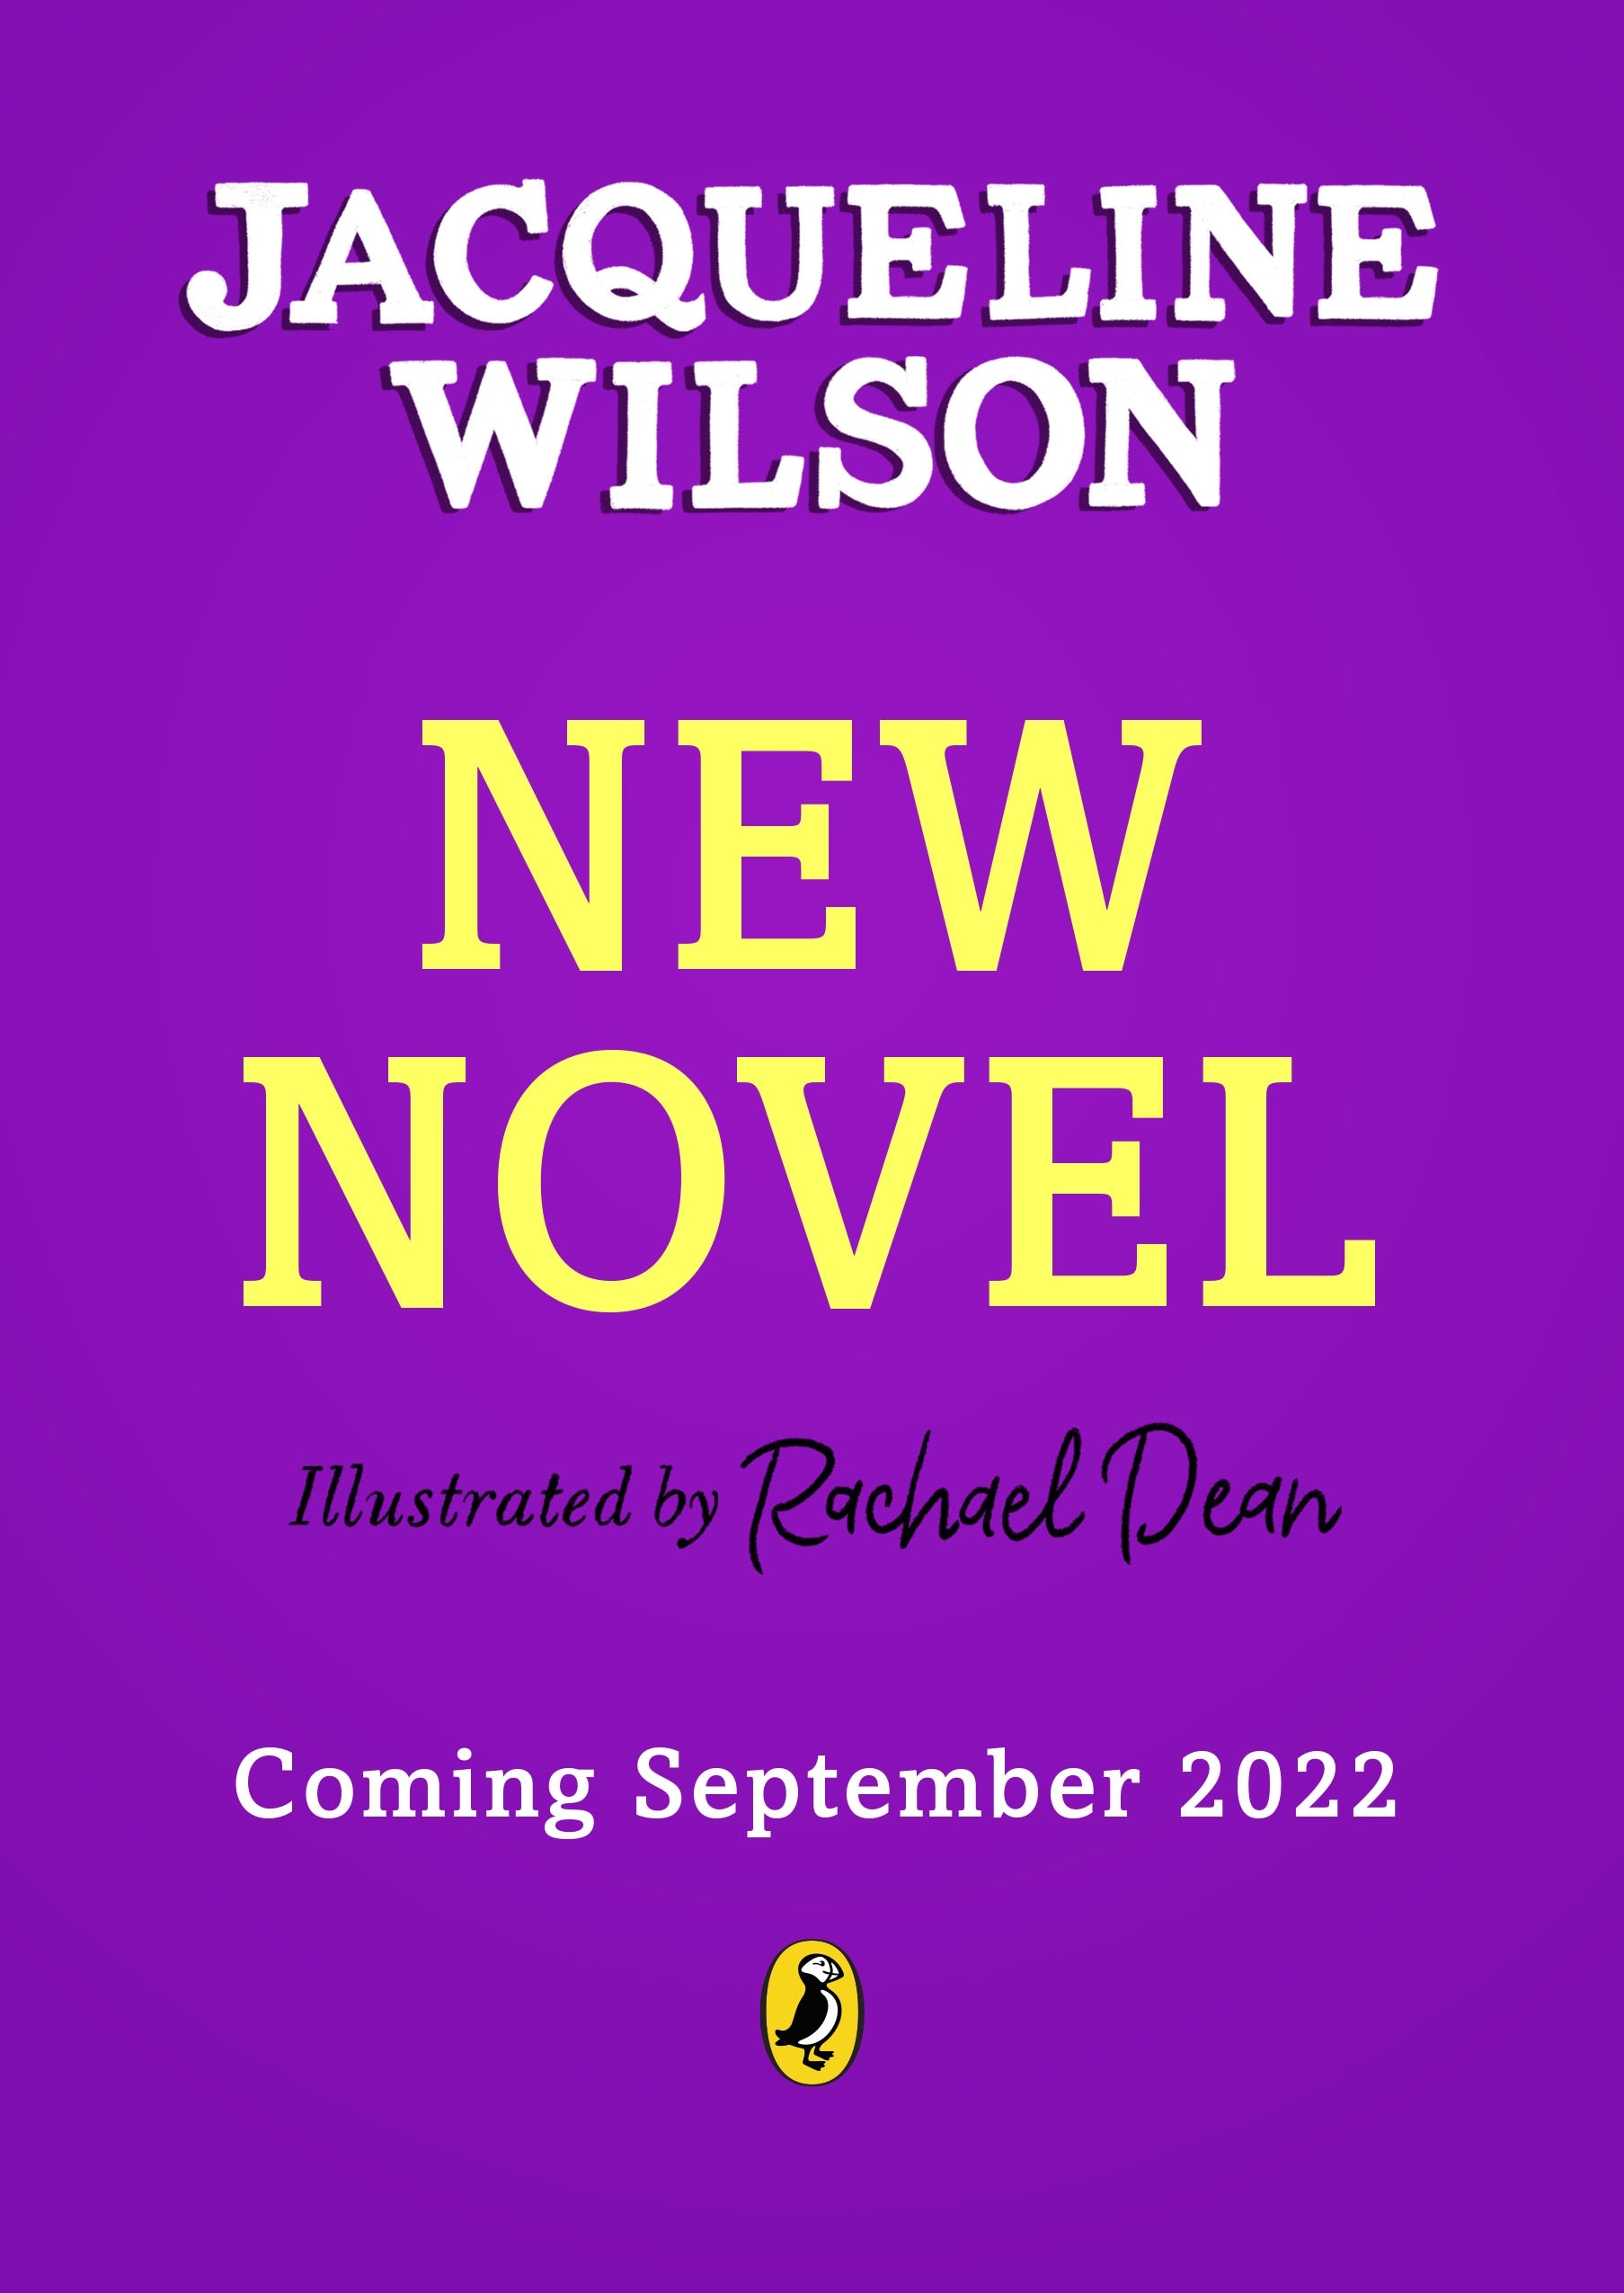 Book “New Novel” by Jacqueline Wilson — September 15, 2022